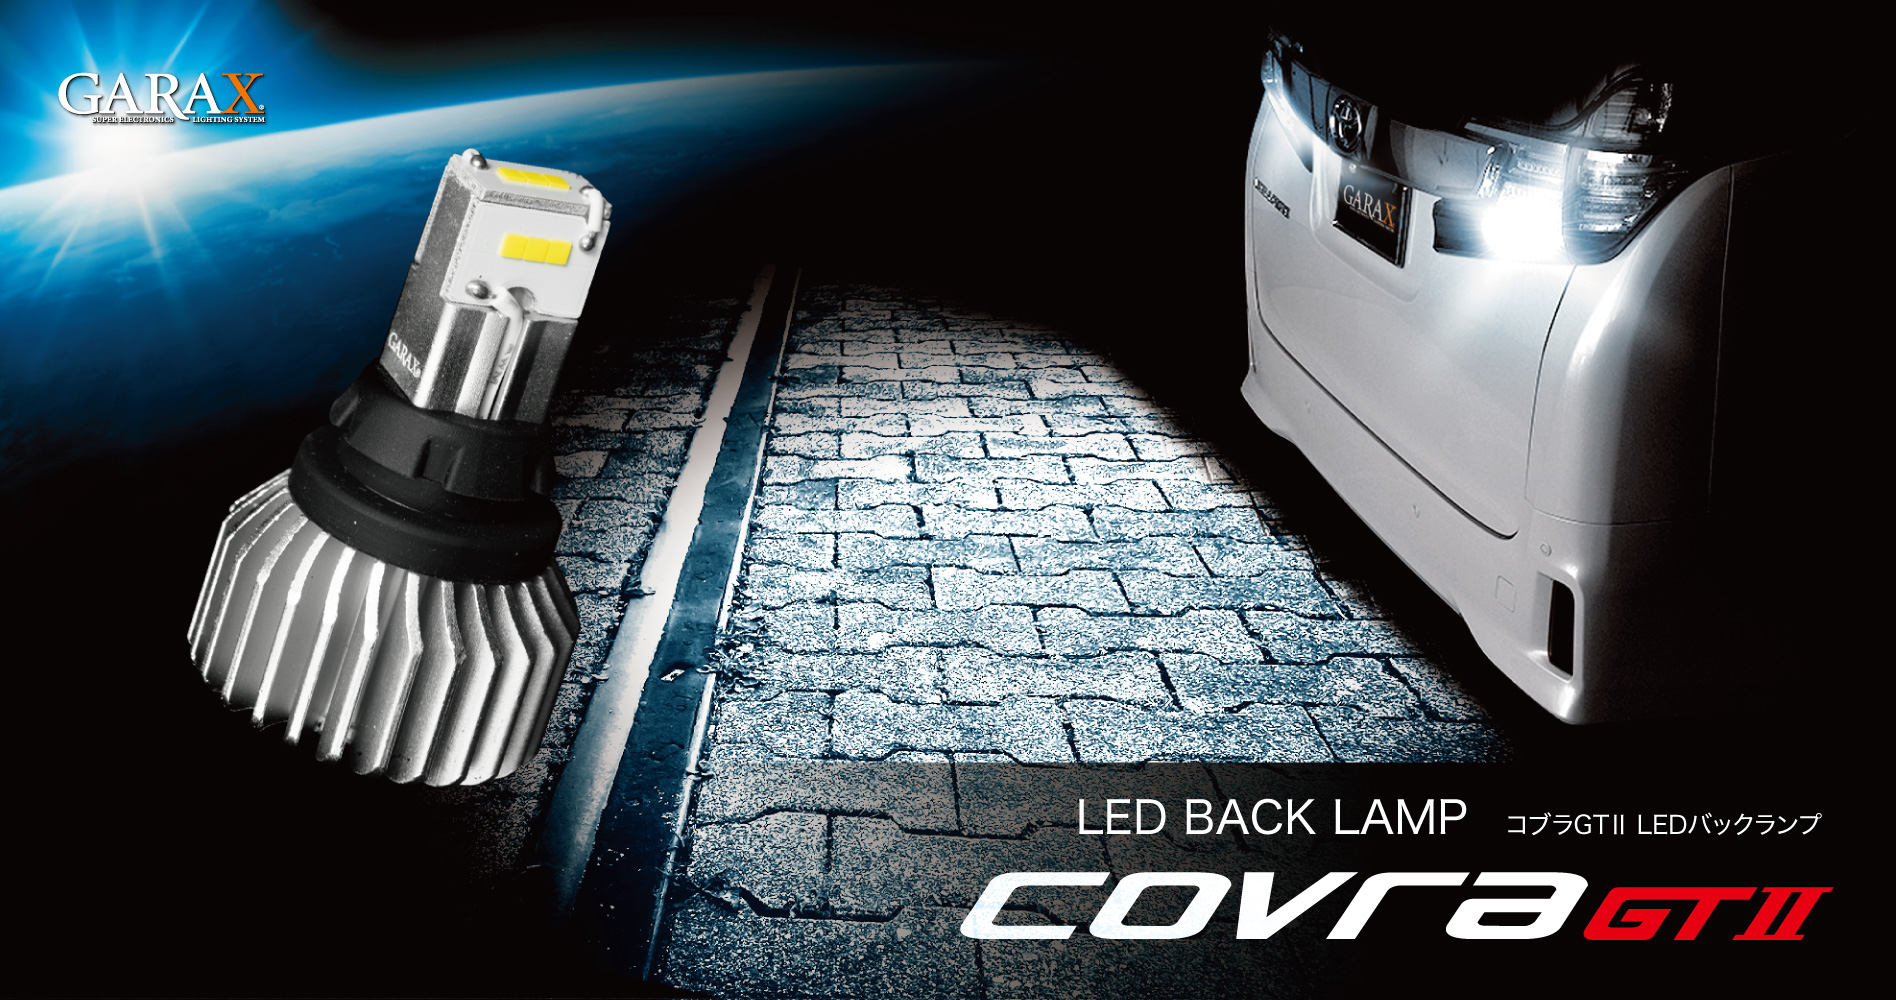 LED BAKC LAMP COVRA GT2